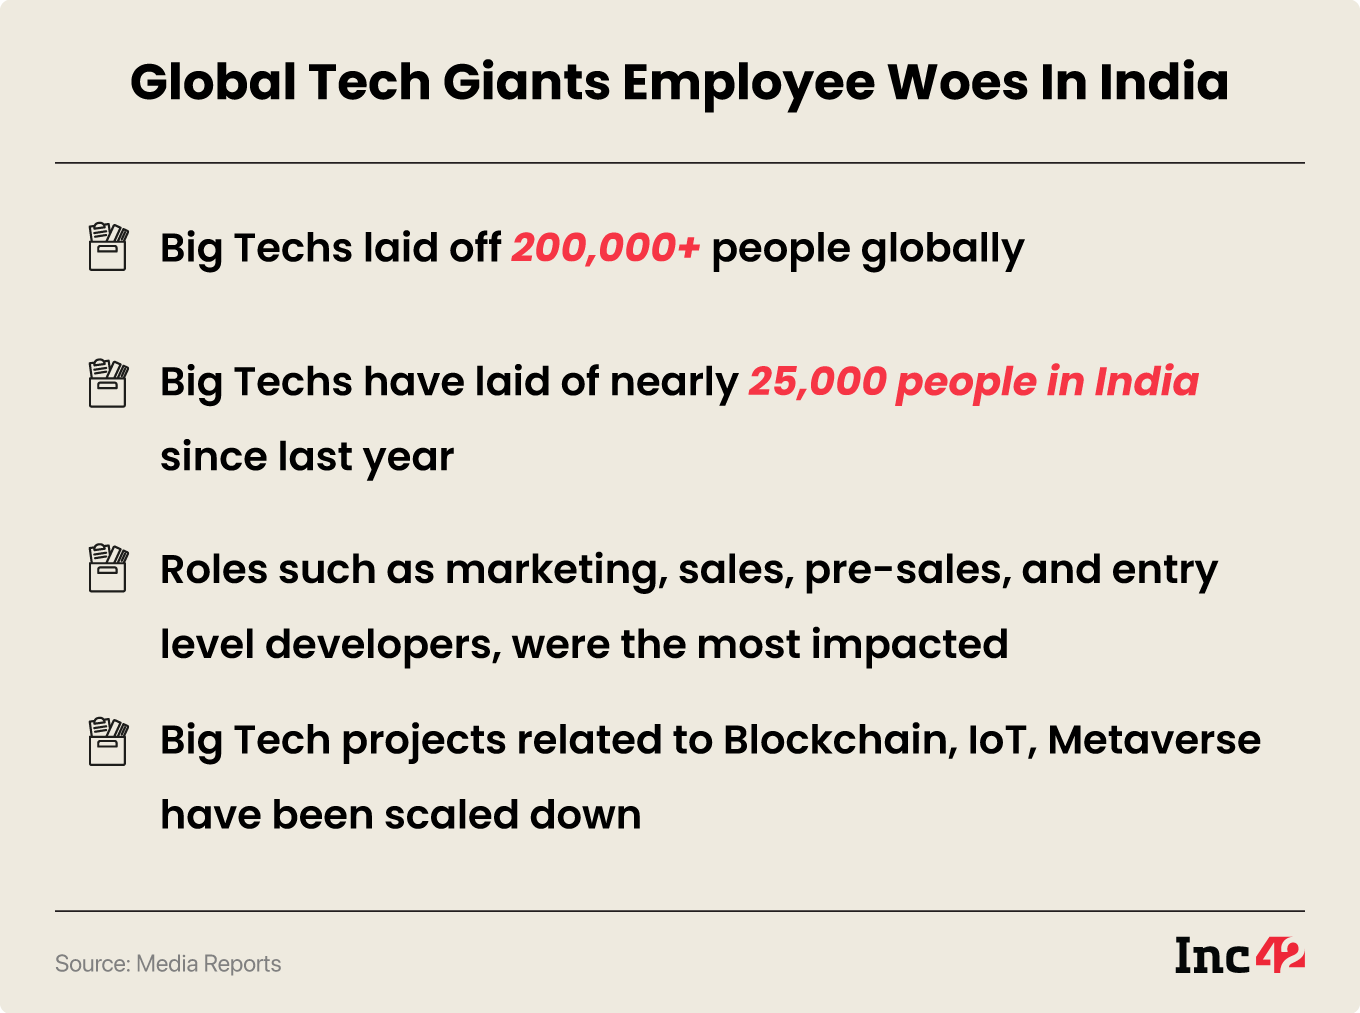 Global tech giants employee woes in India